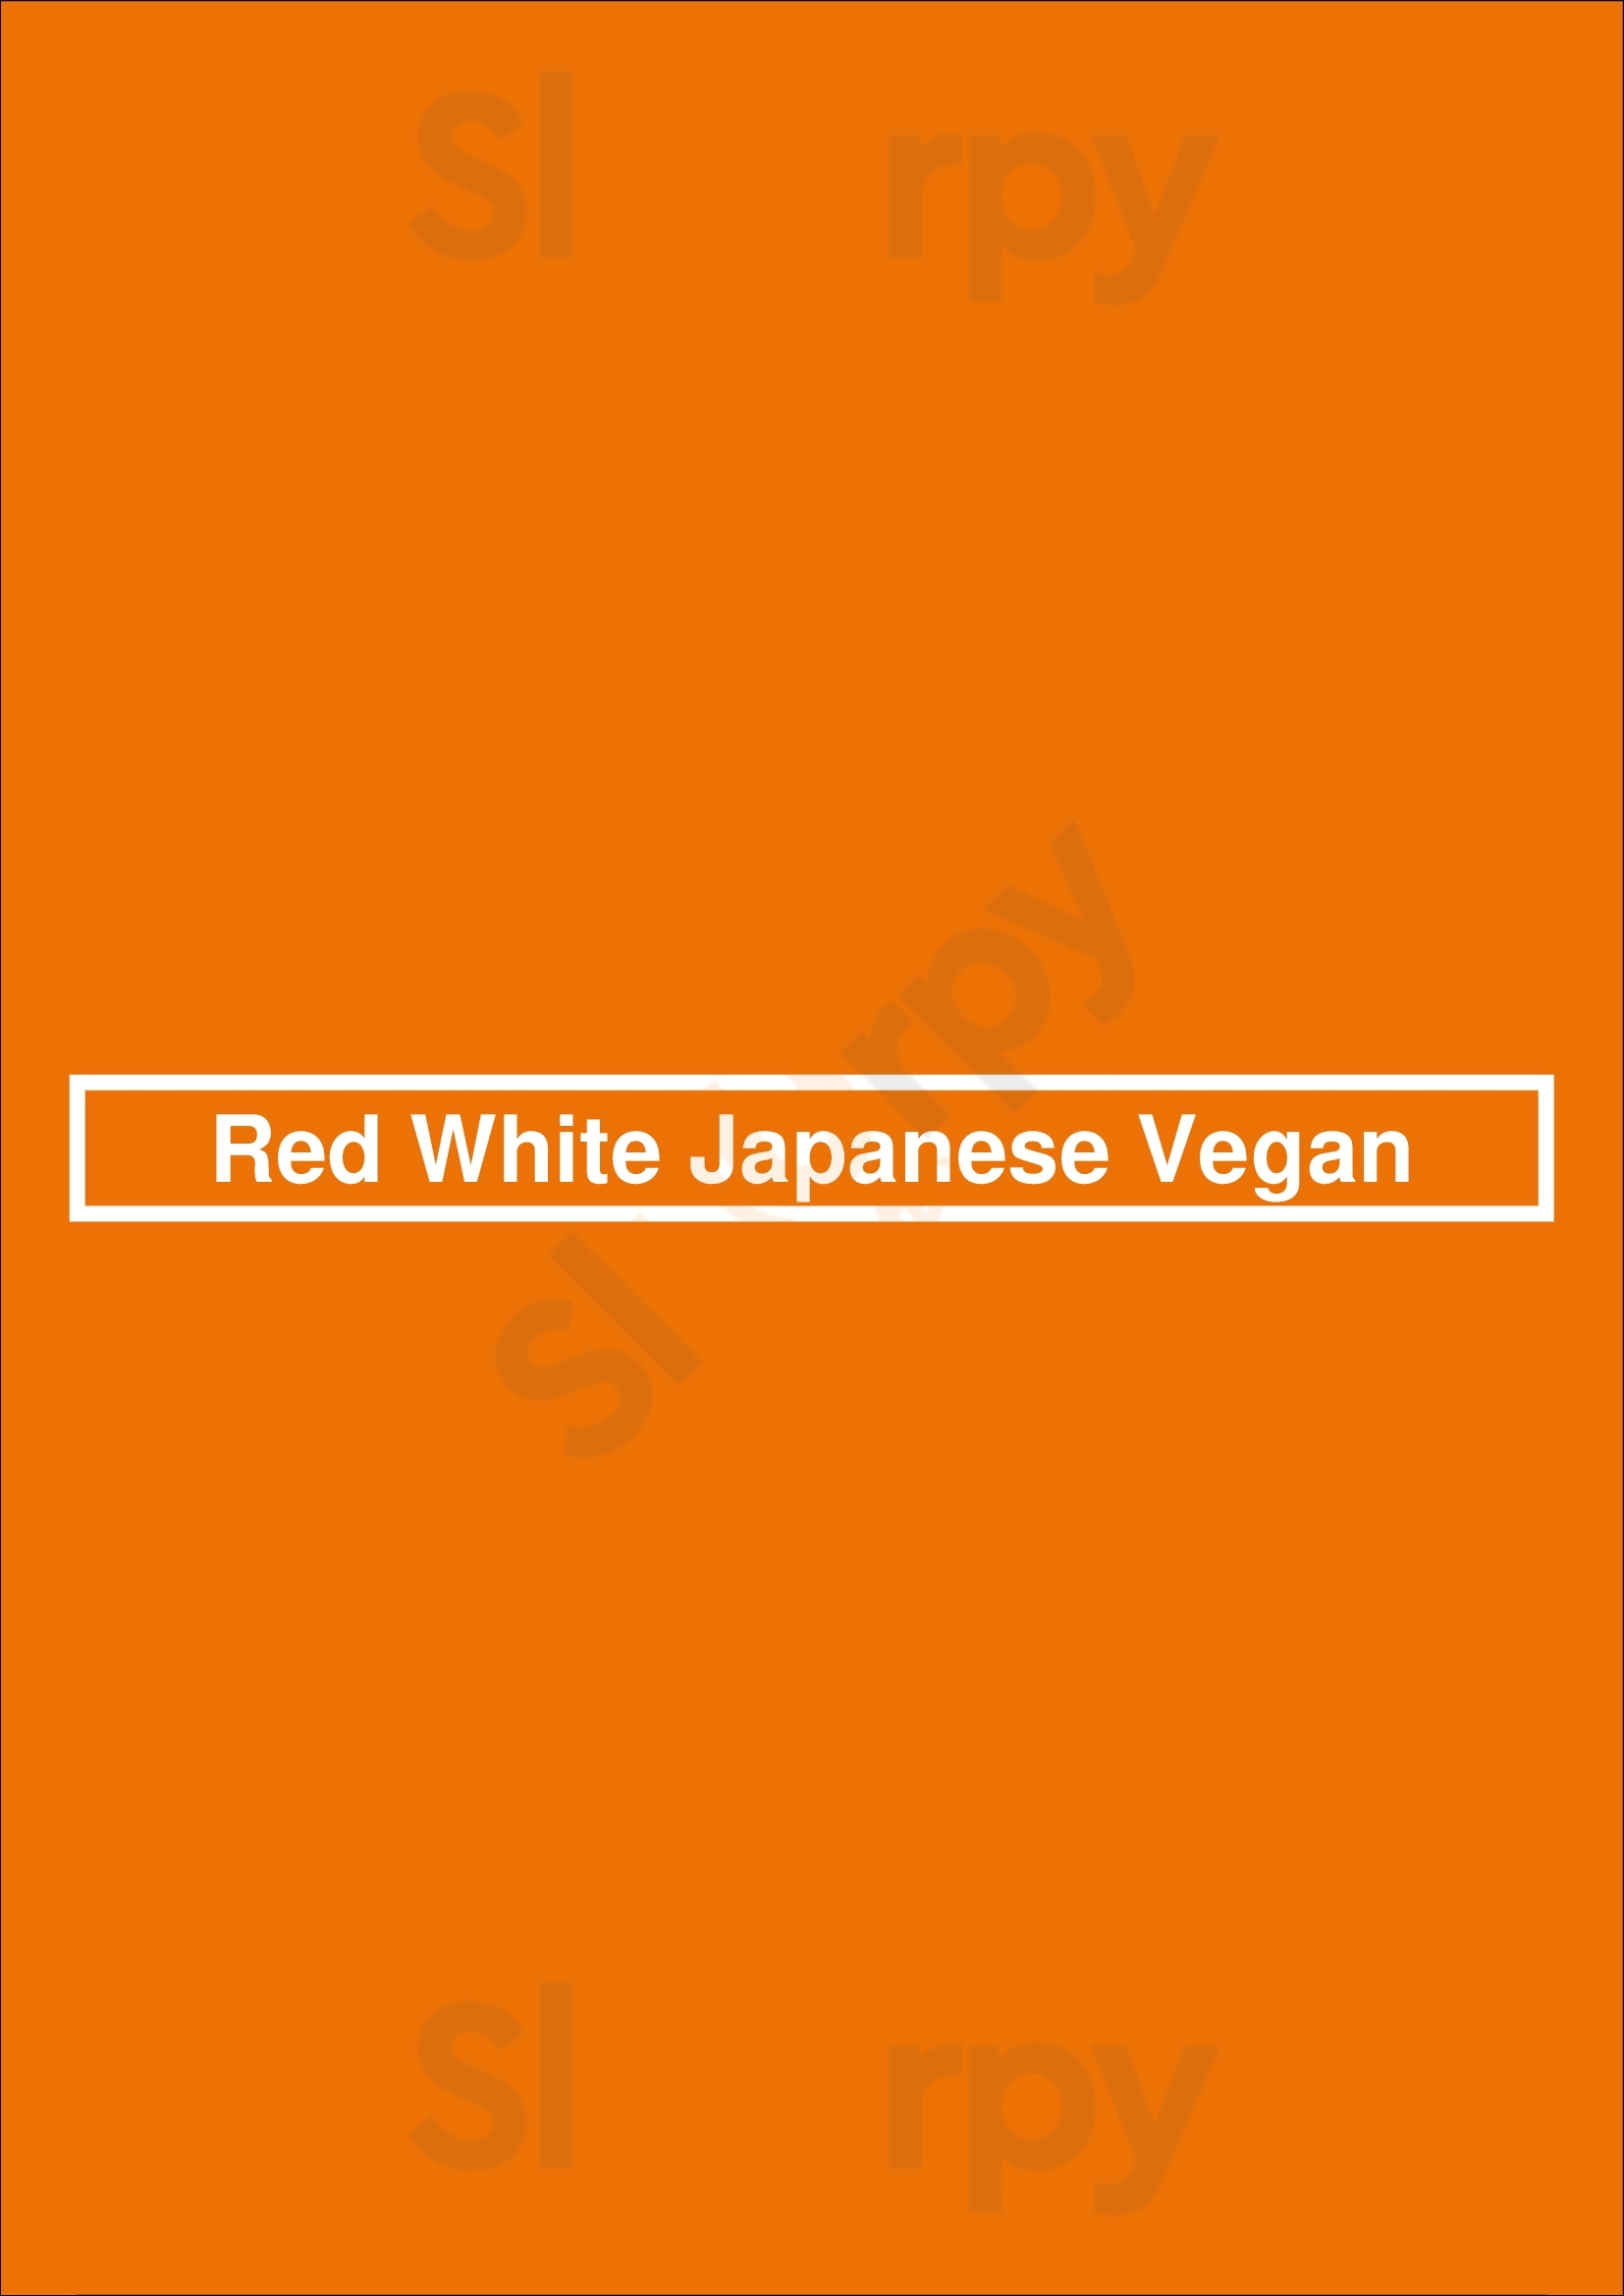 Red White Japanese Vegan Boston Menu - 1